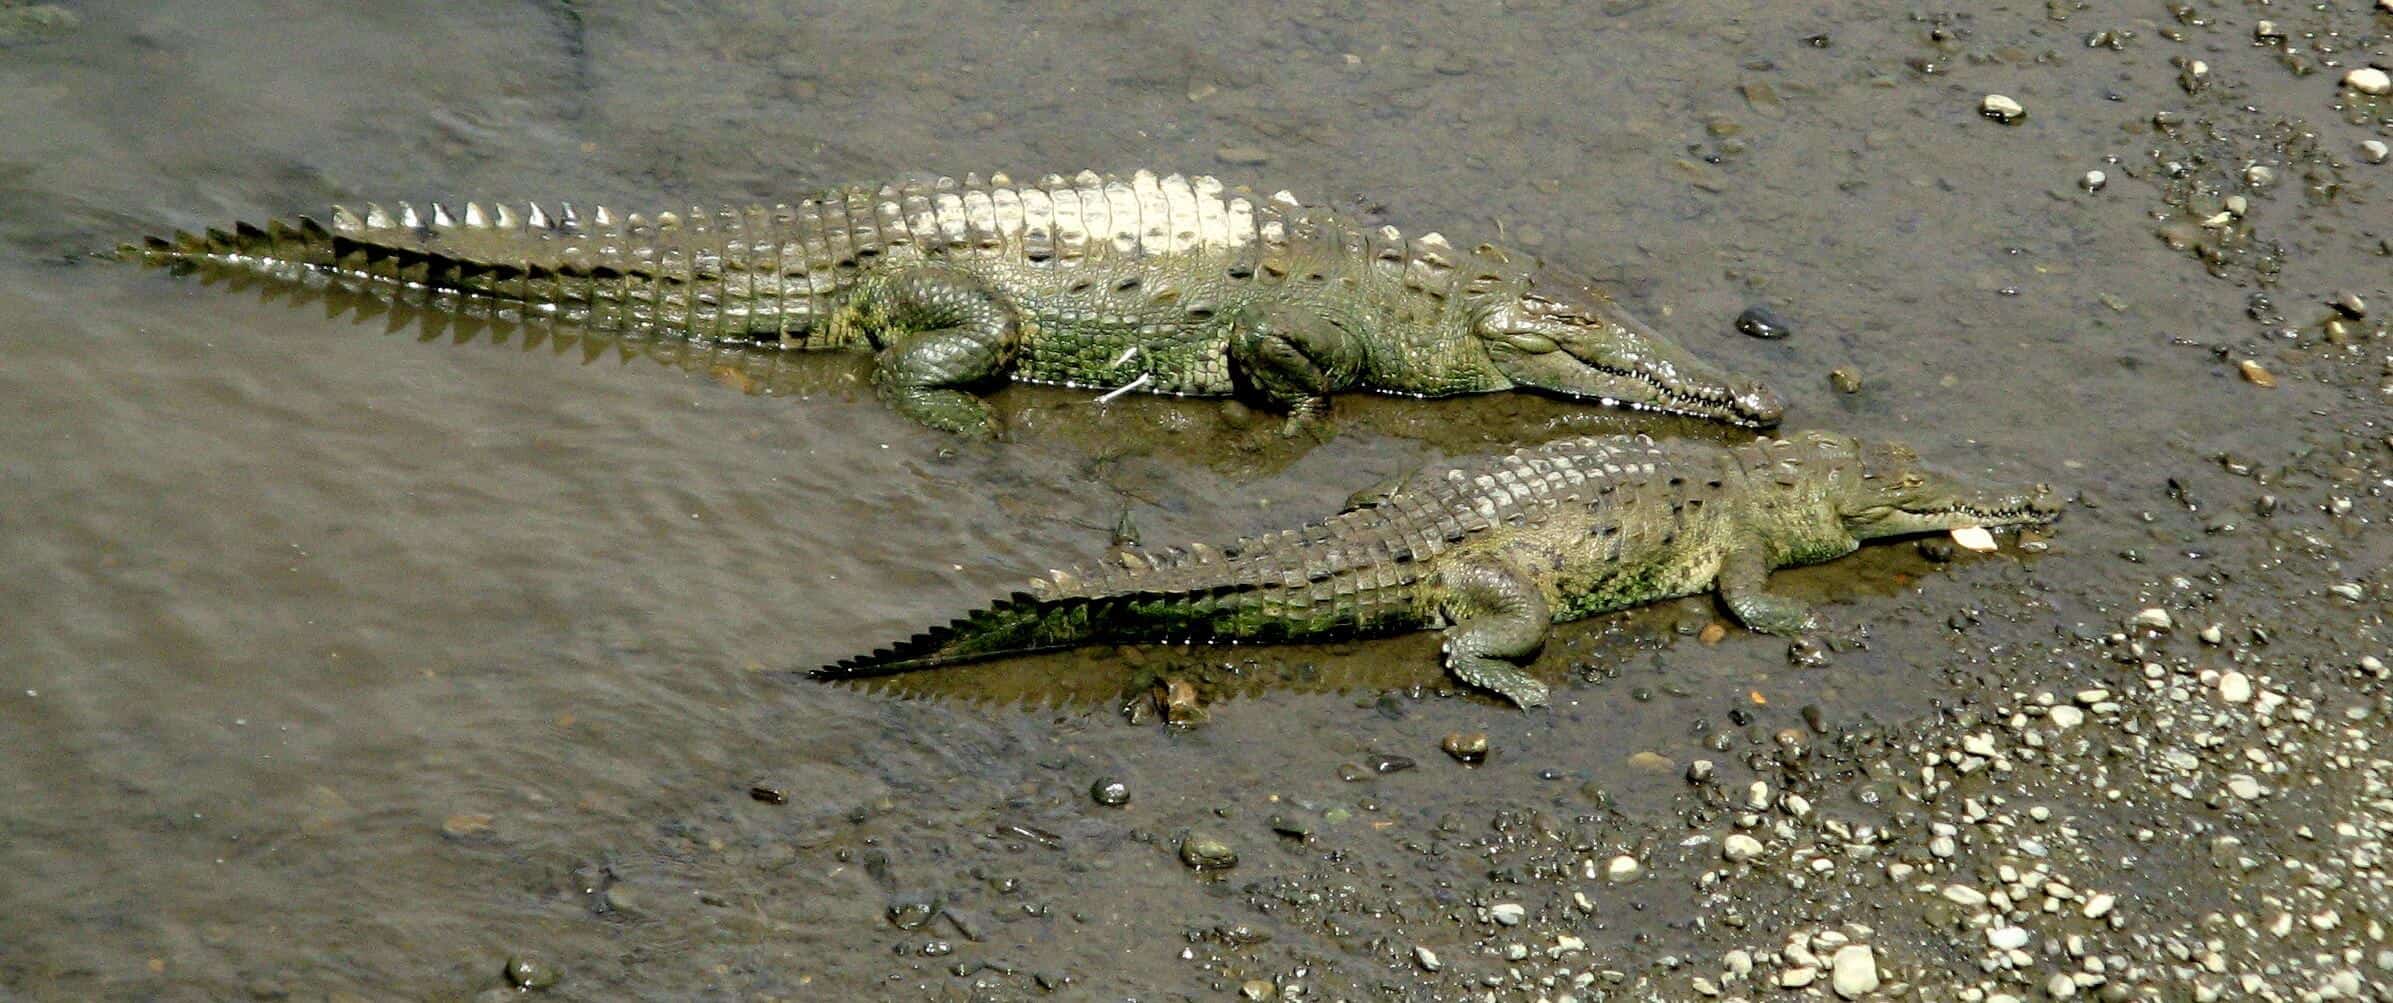 Crocs in Costa Rica